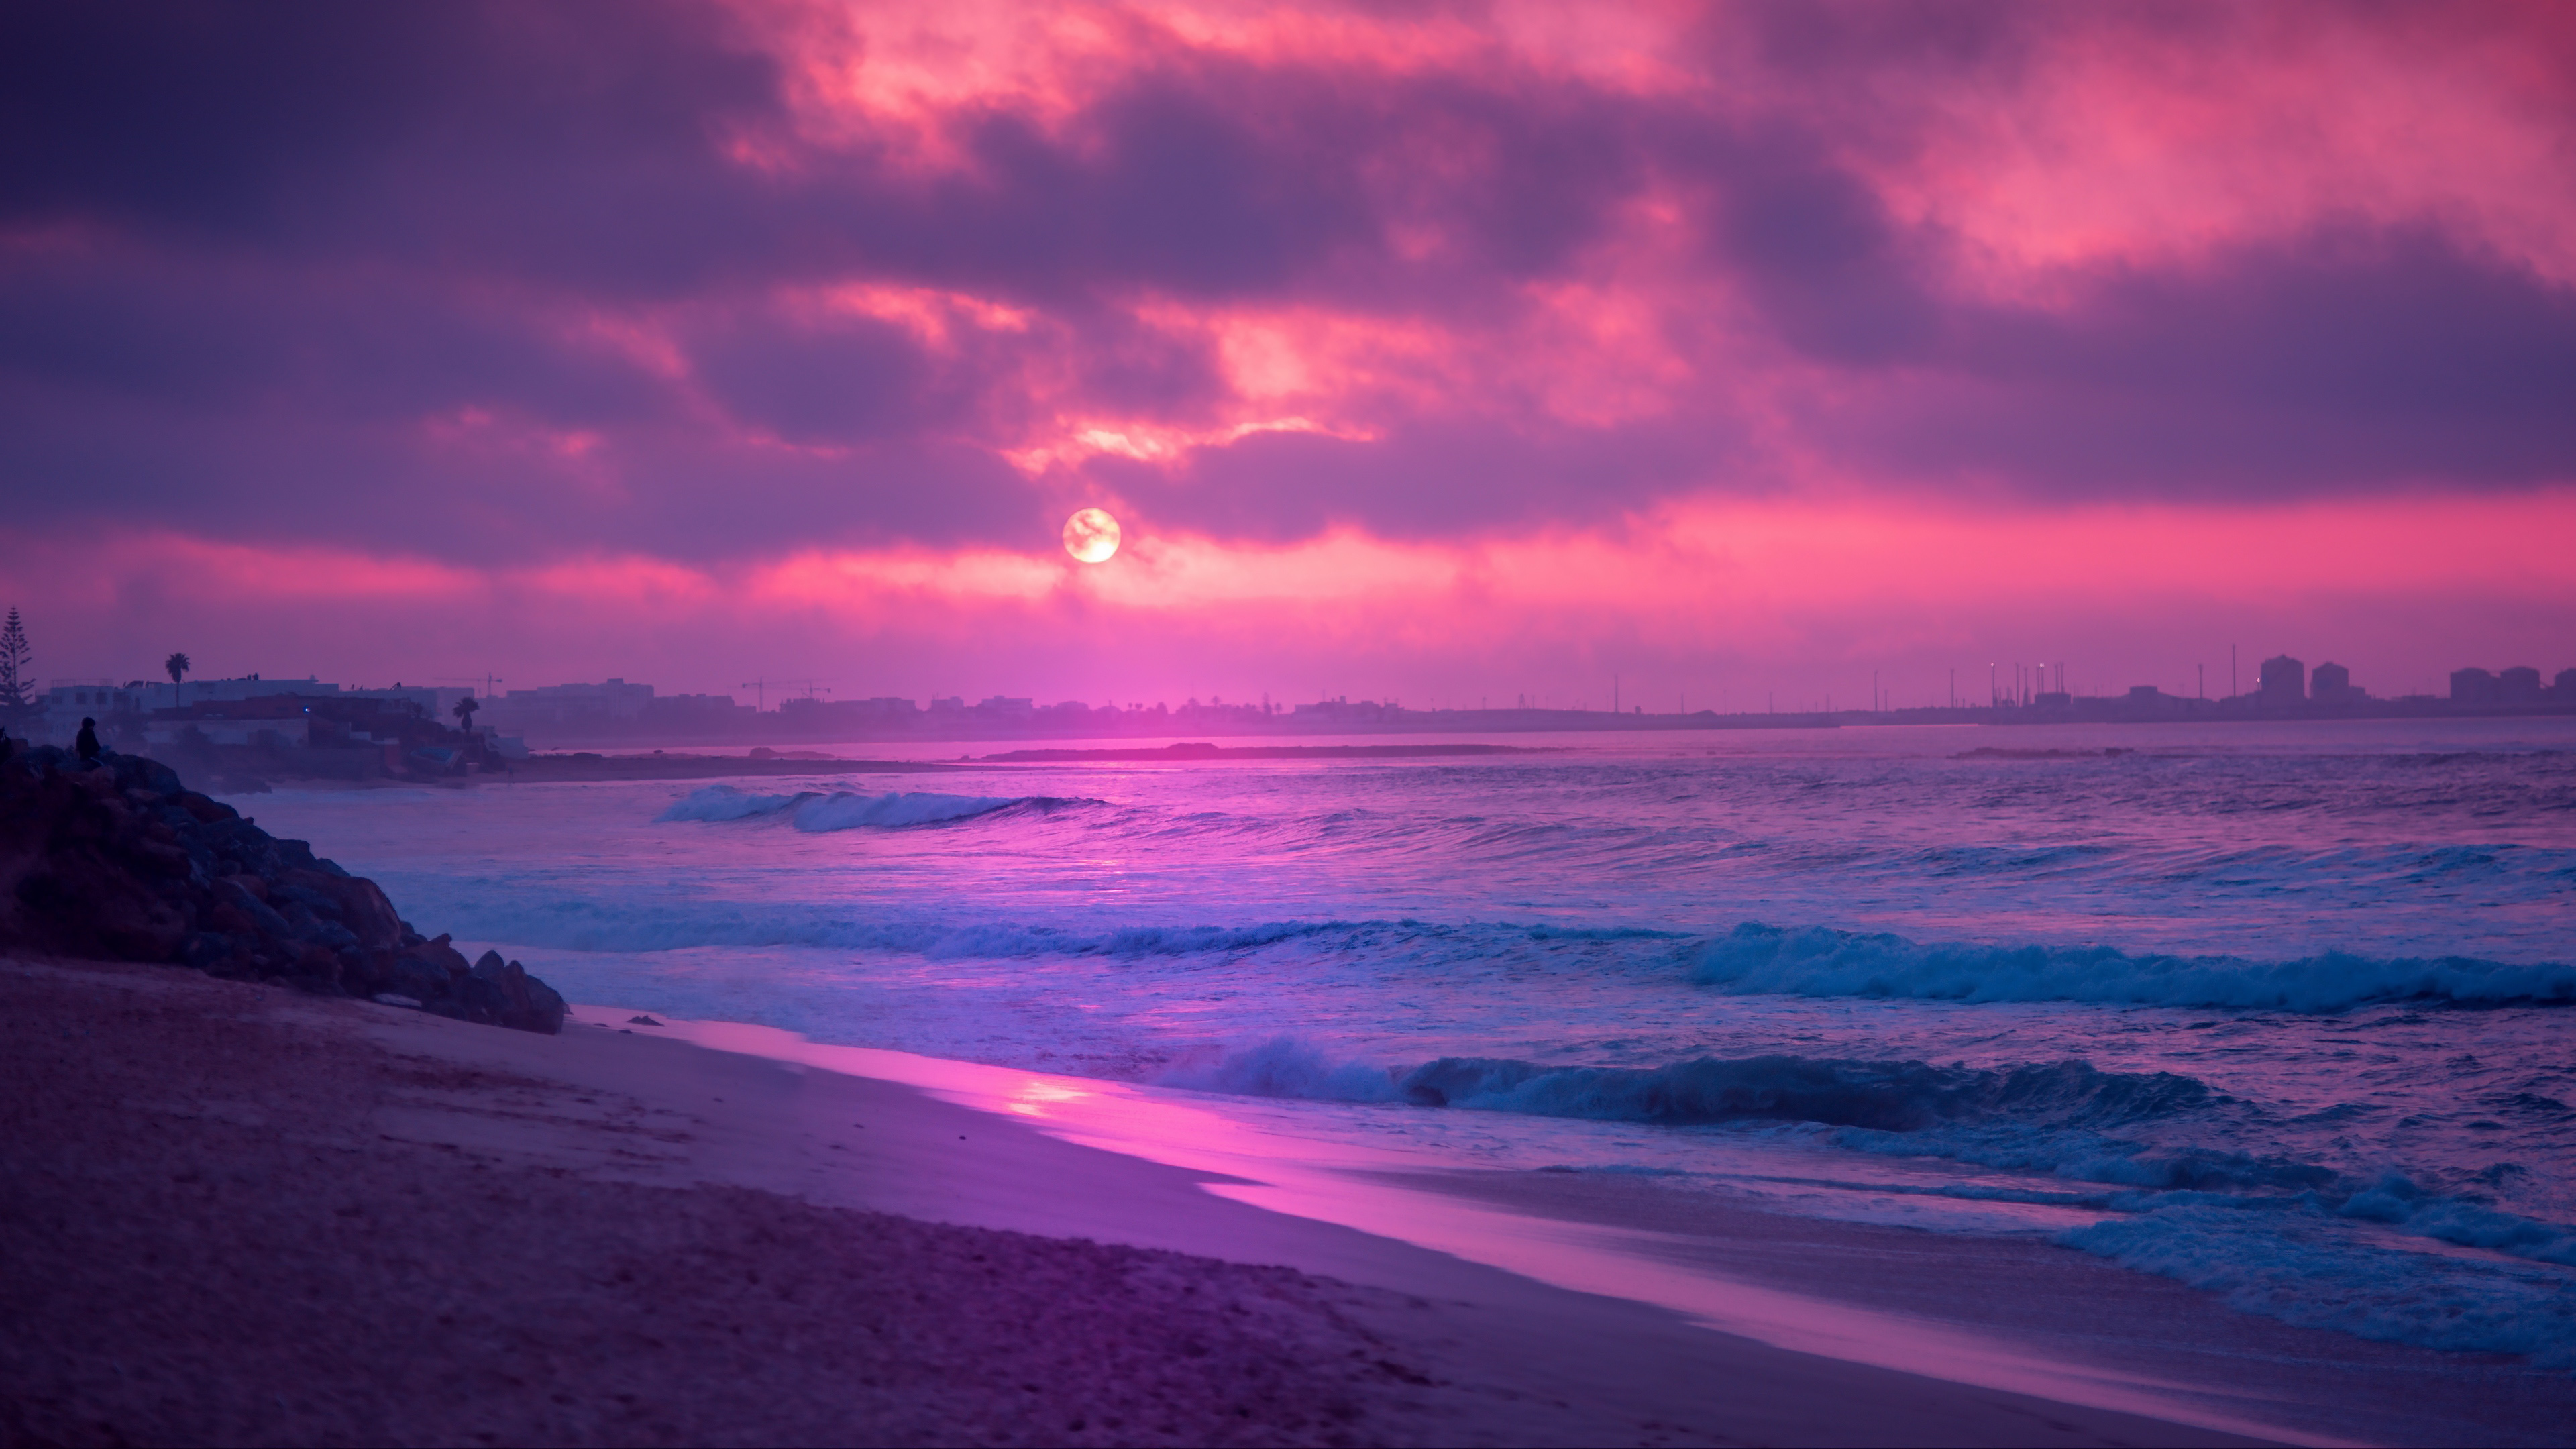 Pink sunset on the beach Wallpaper 4k Ultra HD